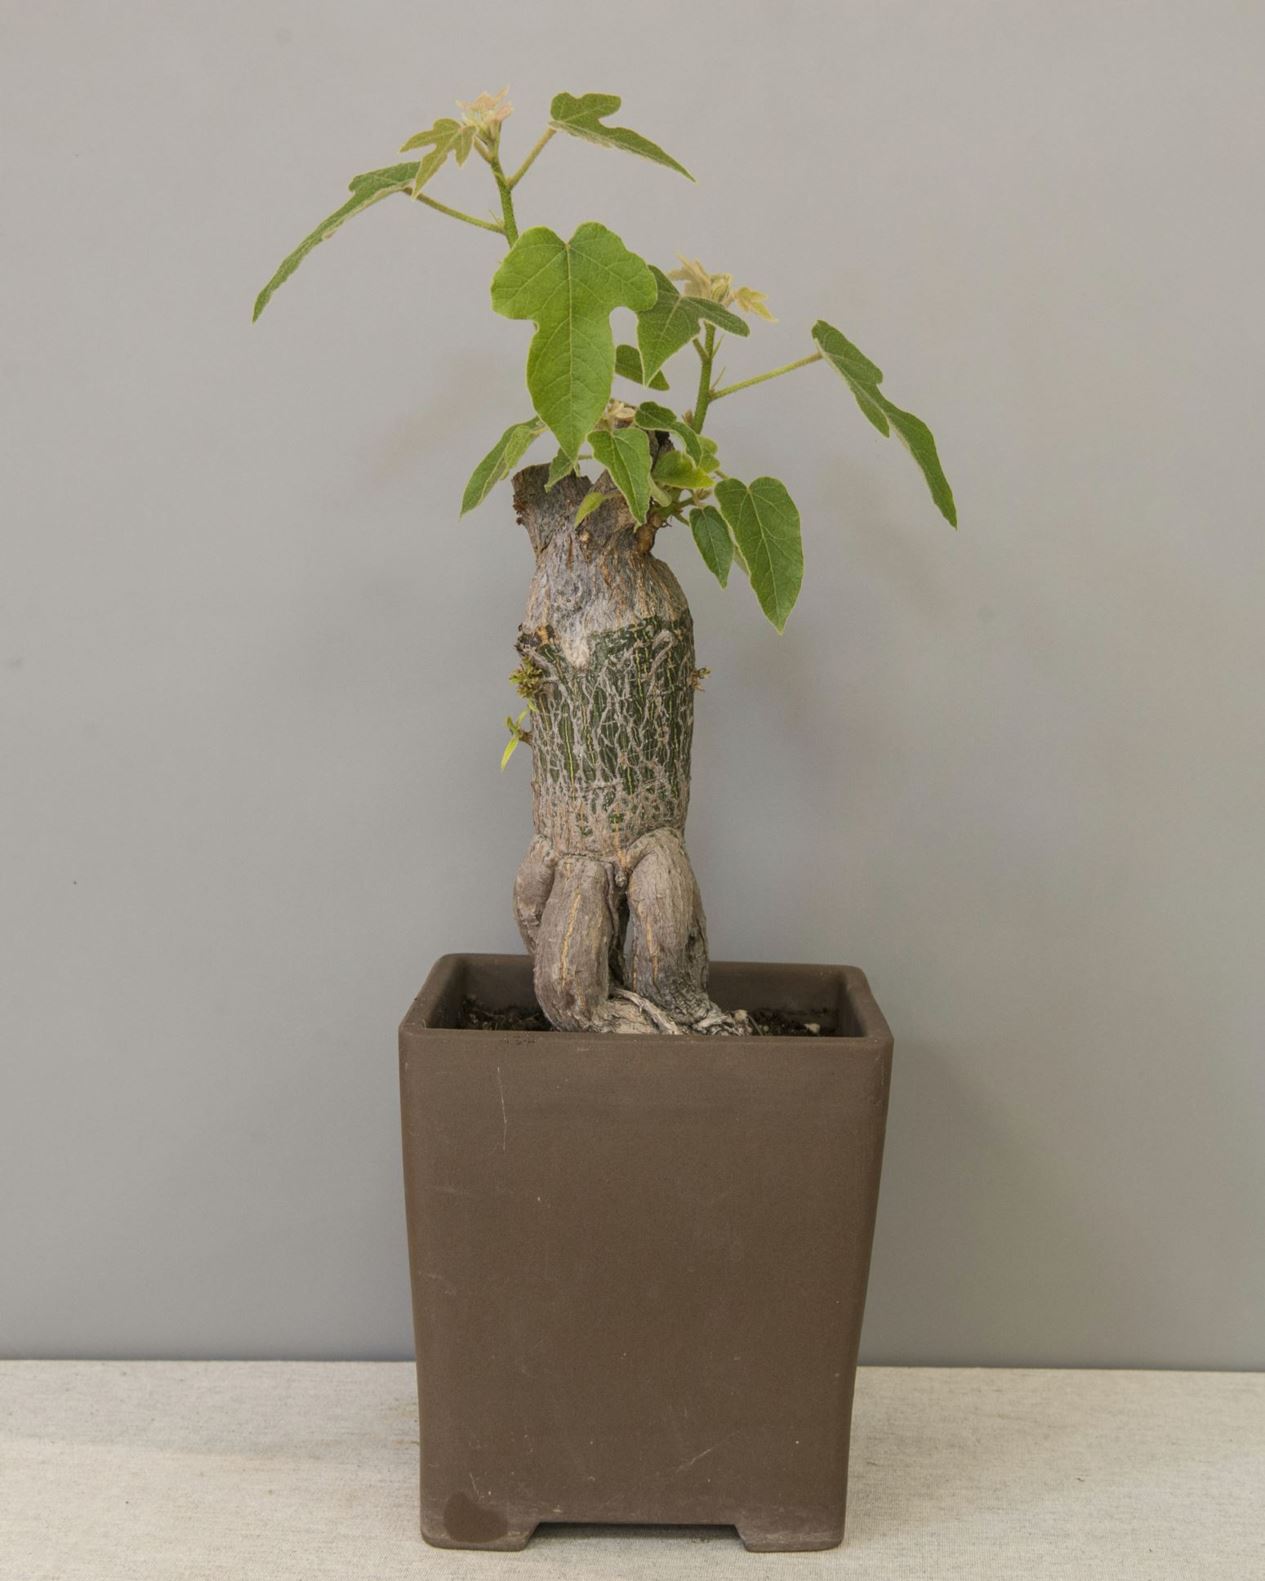 Ficus carica - Ekte fiken, spisefiken